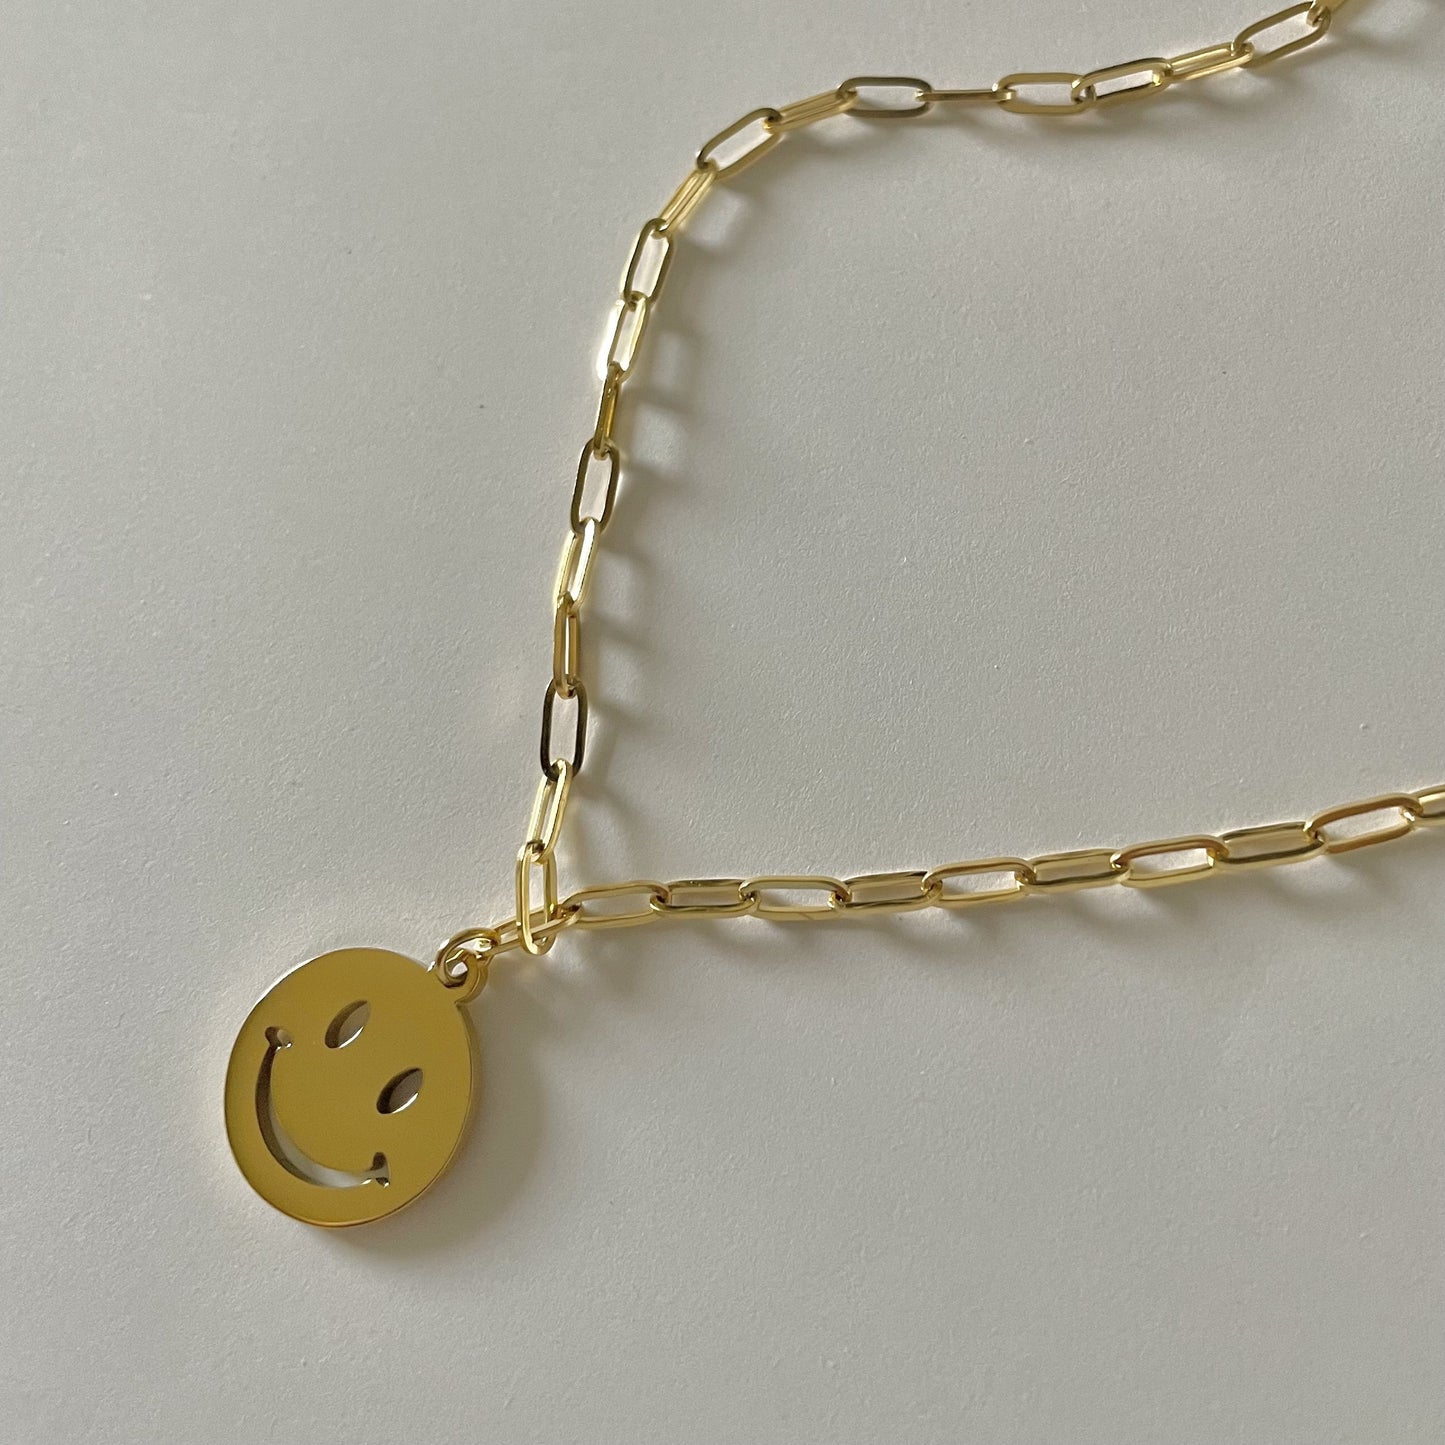 Smiley Necklce - Namaste Jewelry Canada